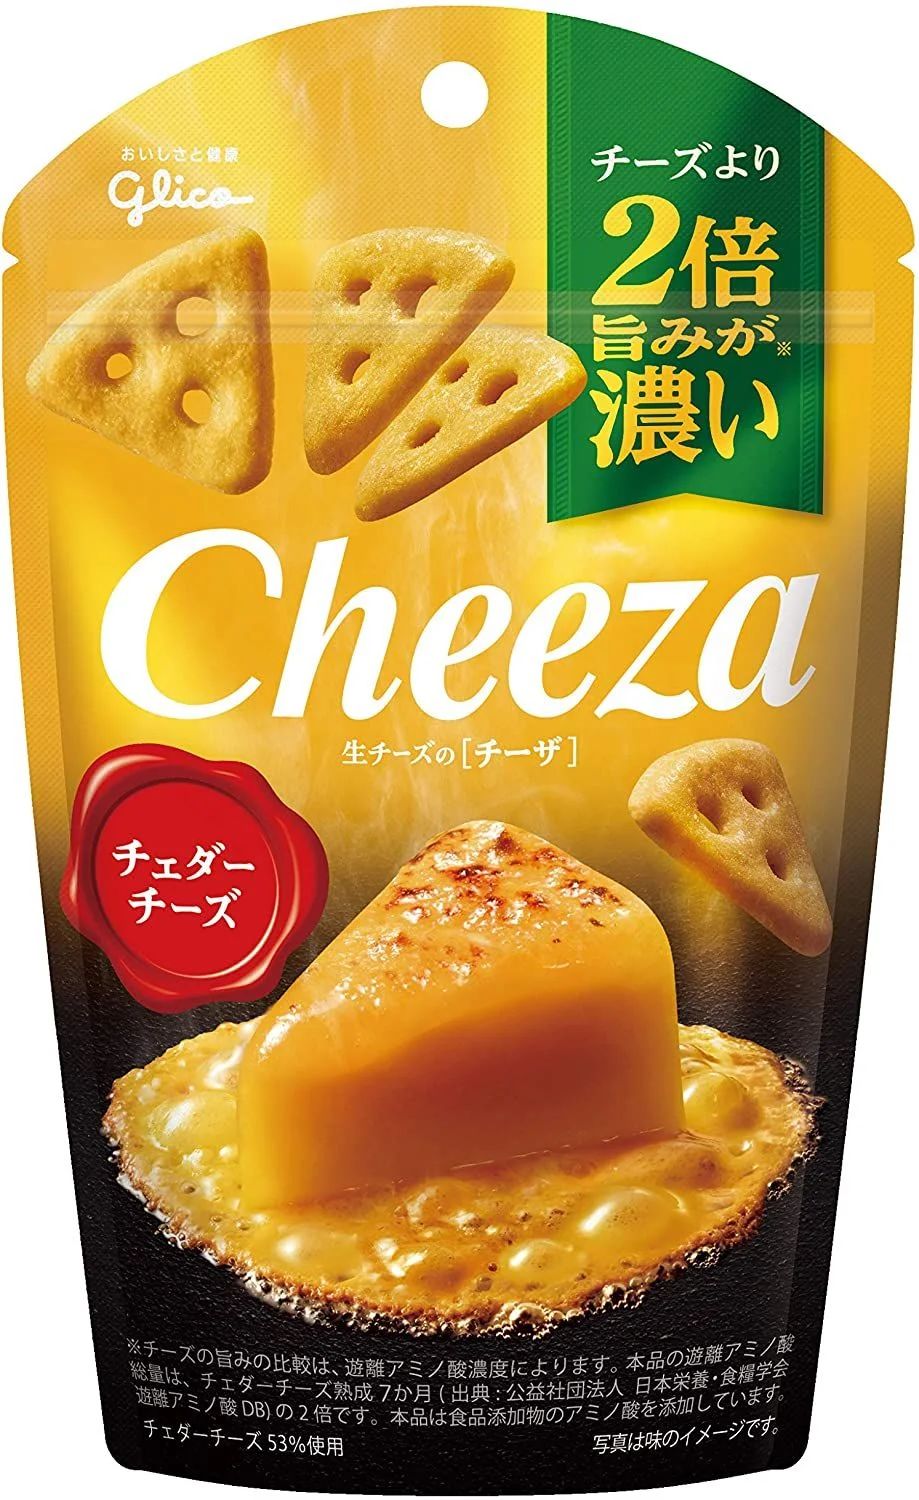 生チーズのチーザ チェダーチーズ 40g×10個 おつまみチーズ ワインに合う スナック菓子